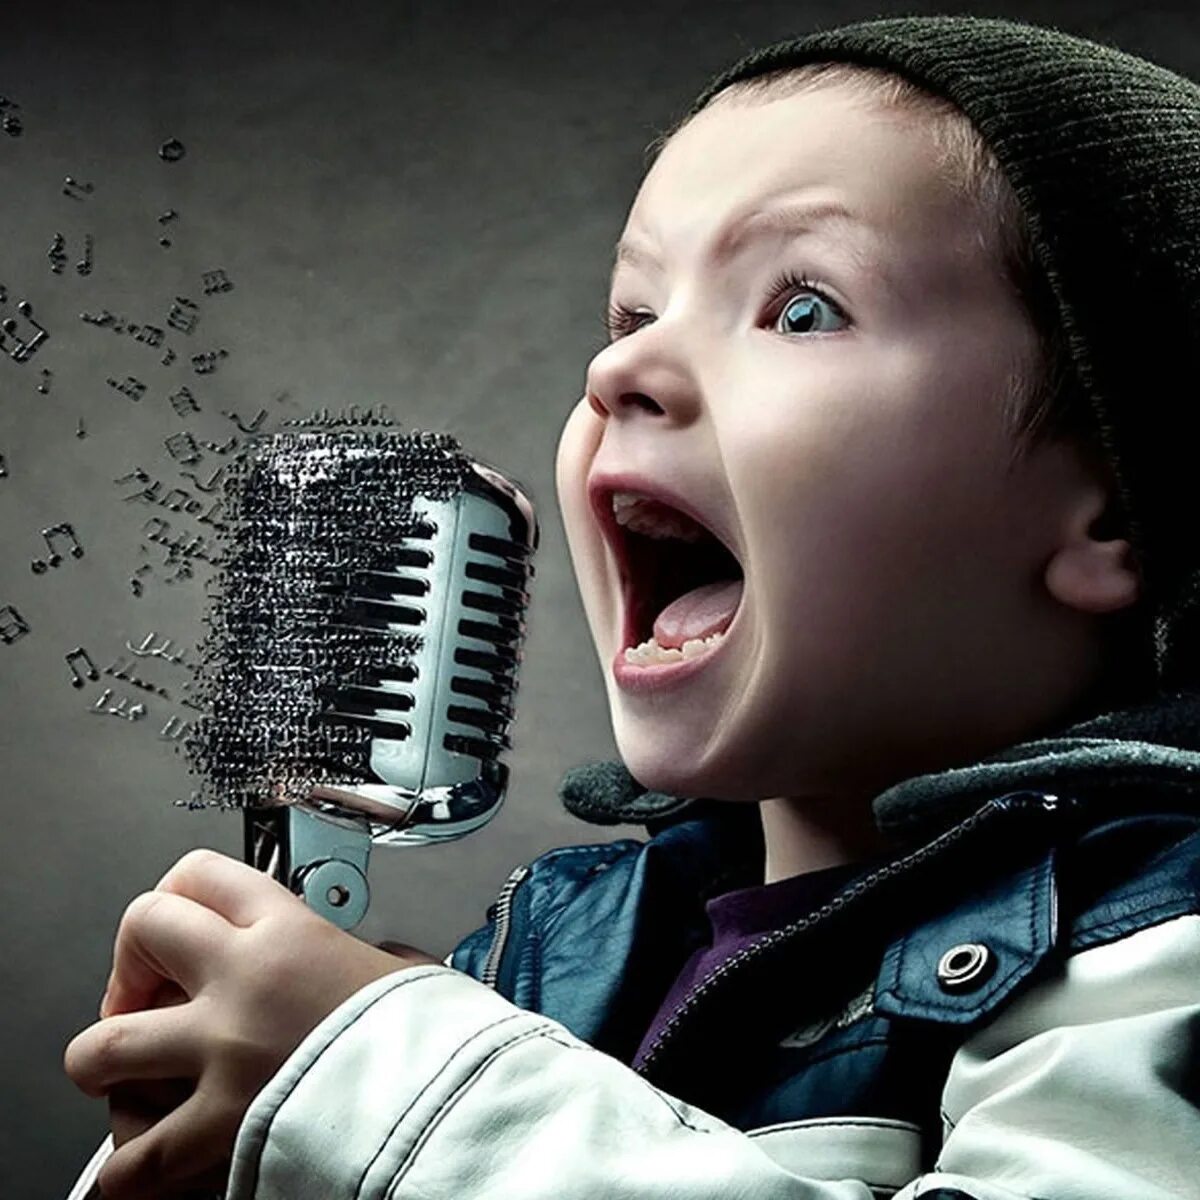 Пение в 2 голоса. Вокал дети. Малыш с микрофоном. Дети поют. Мальчик с микрофоном.